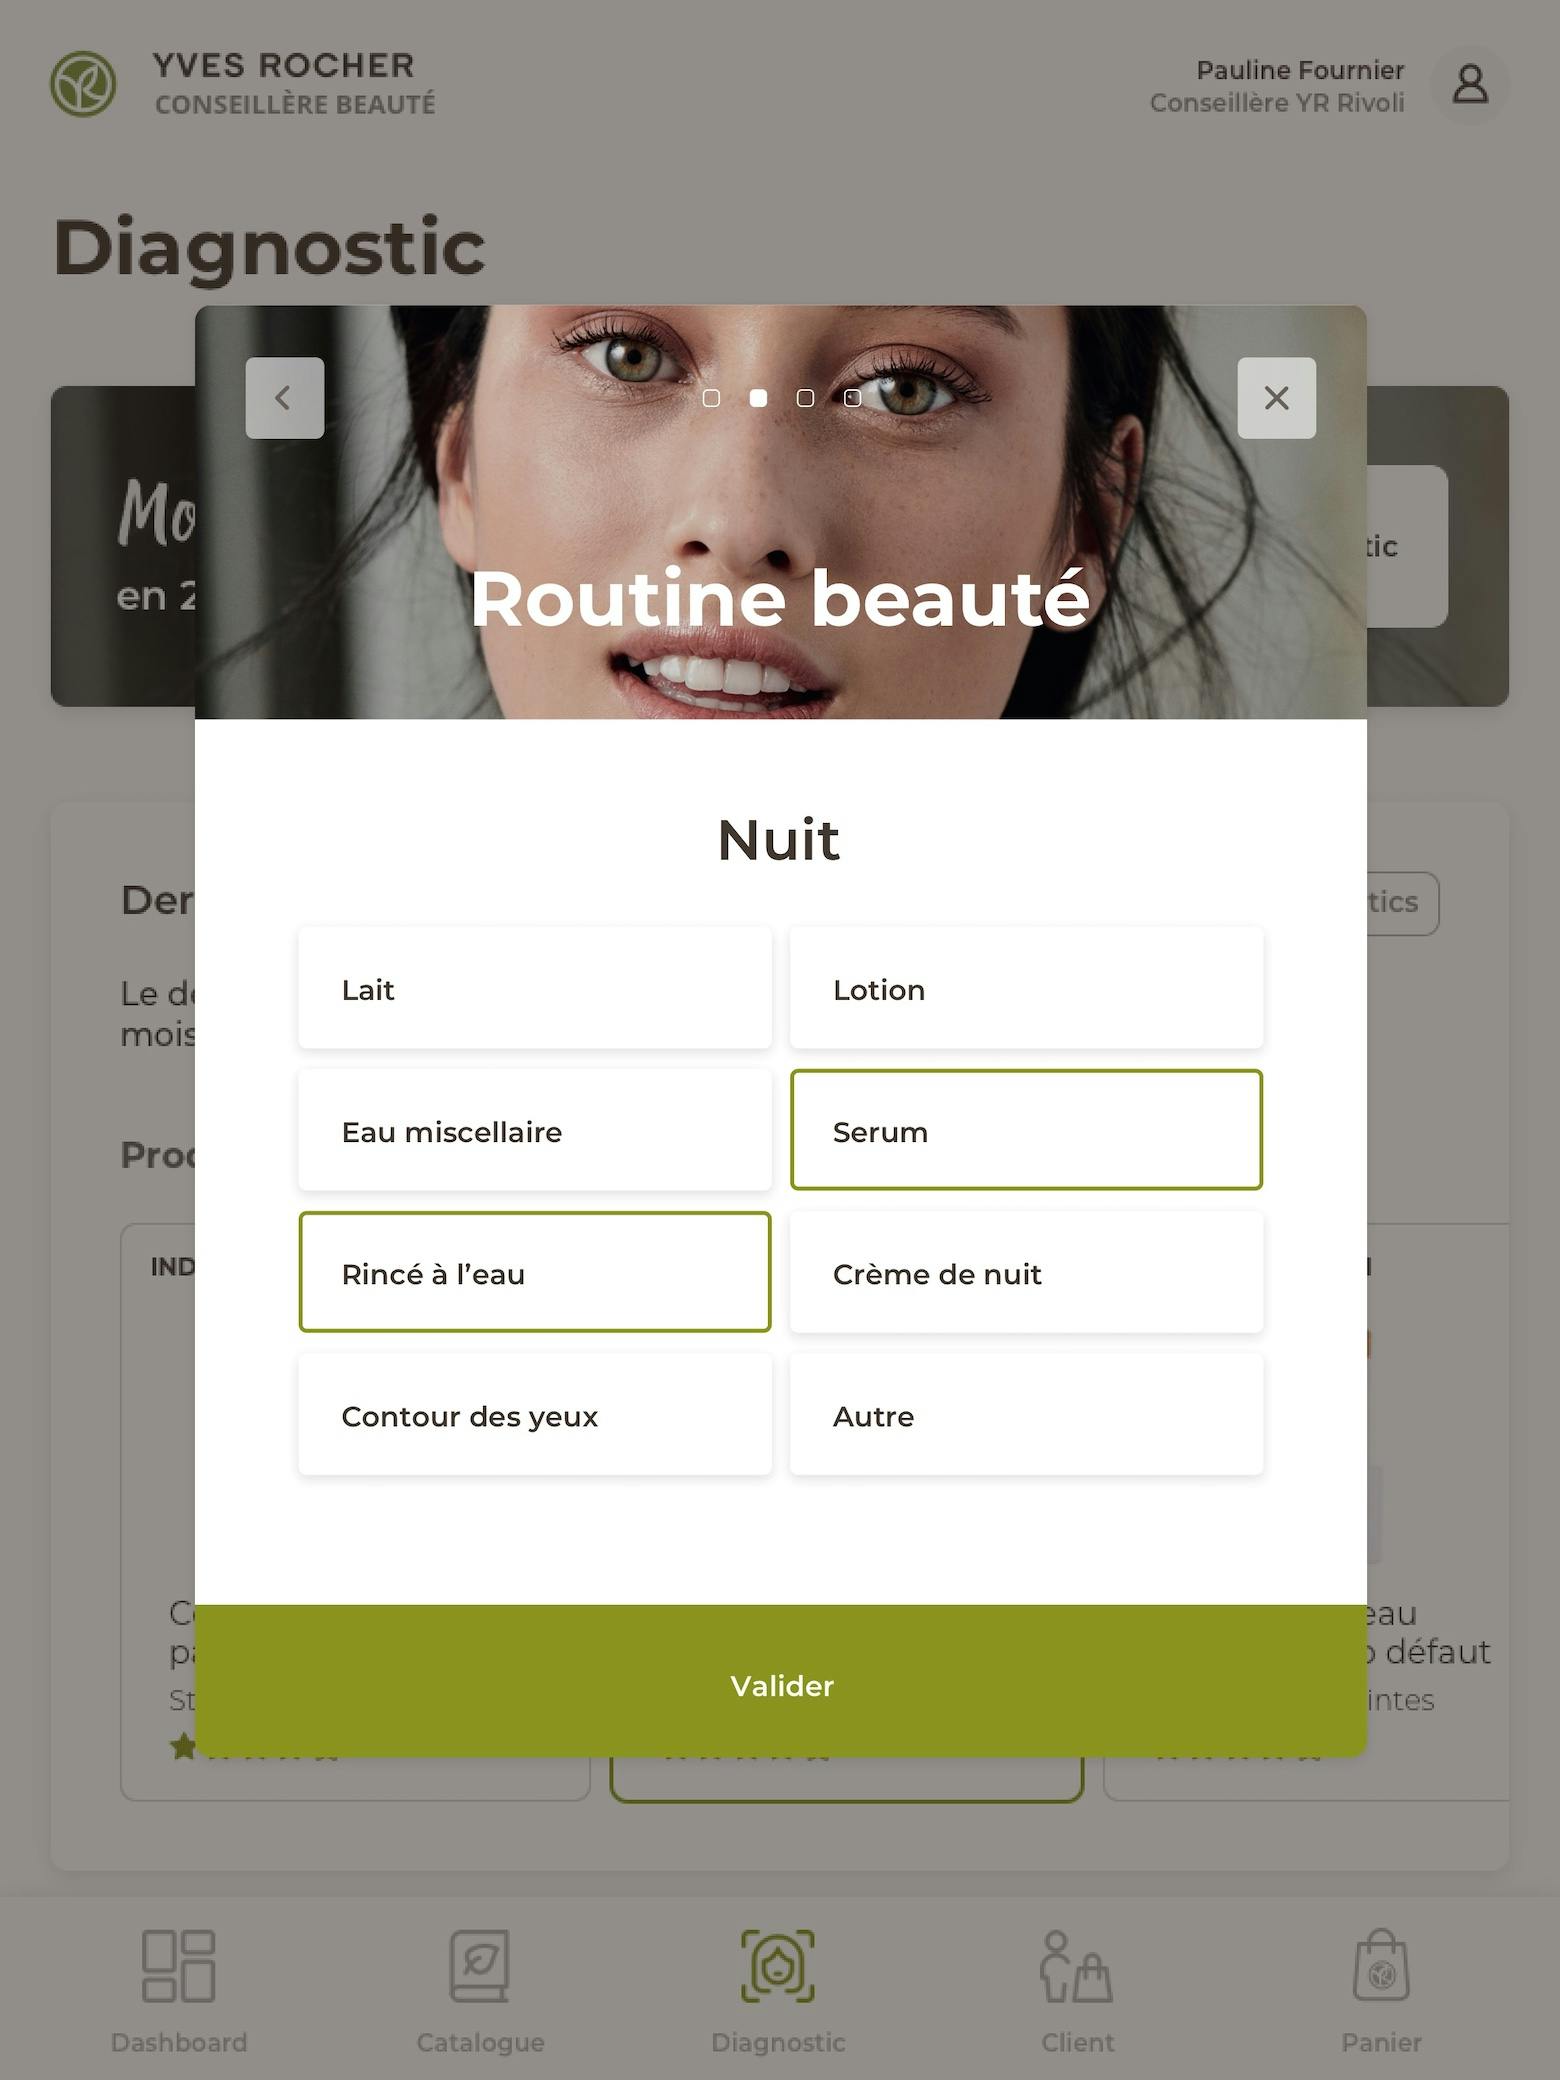 Design of an app for beauty advisors